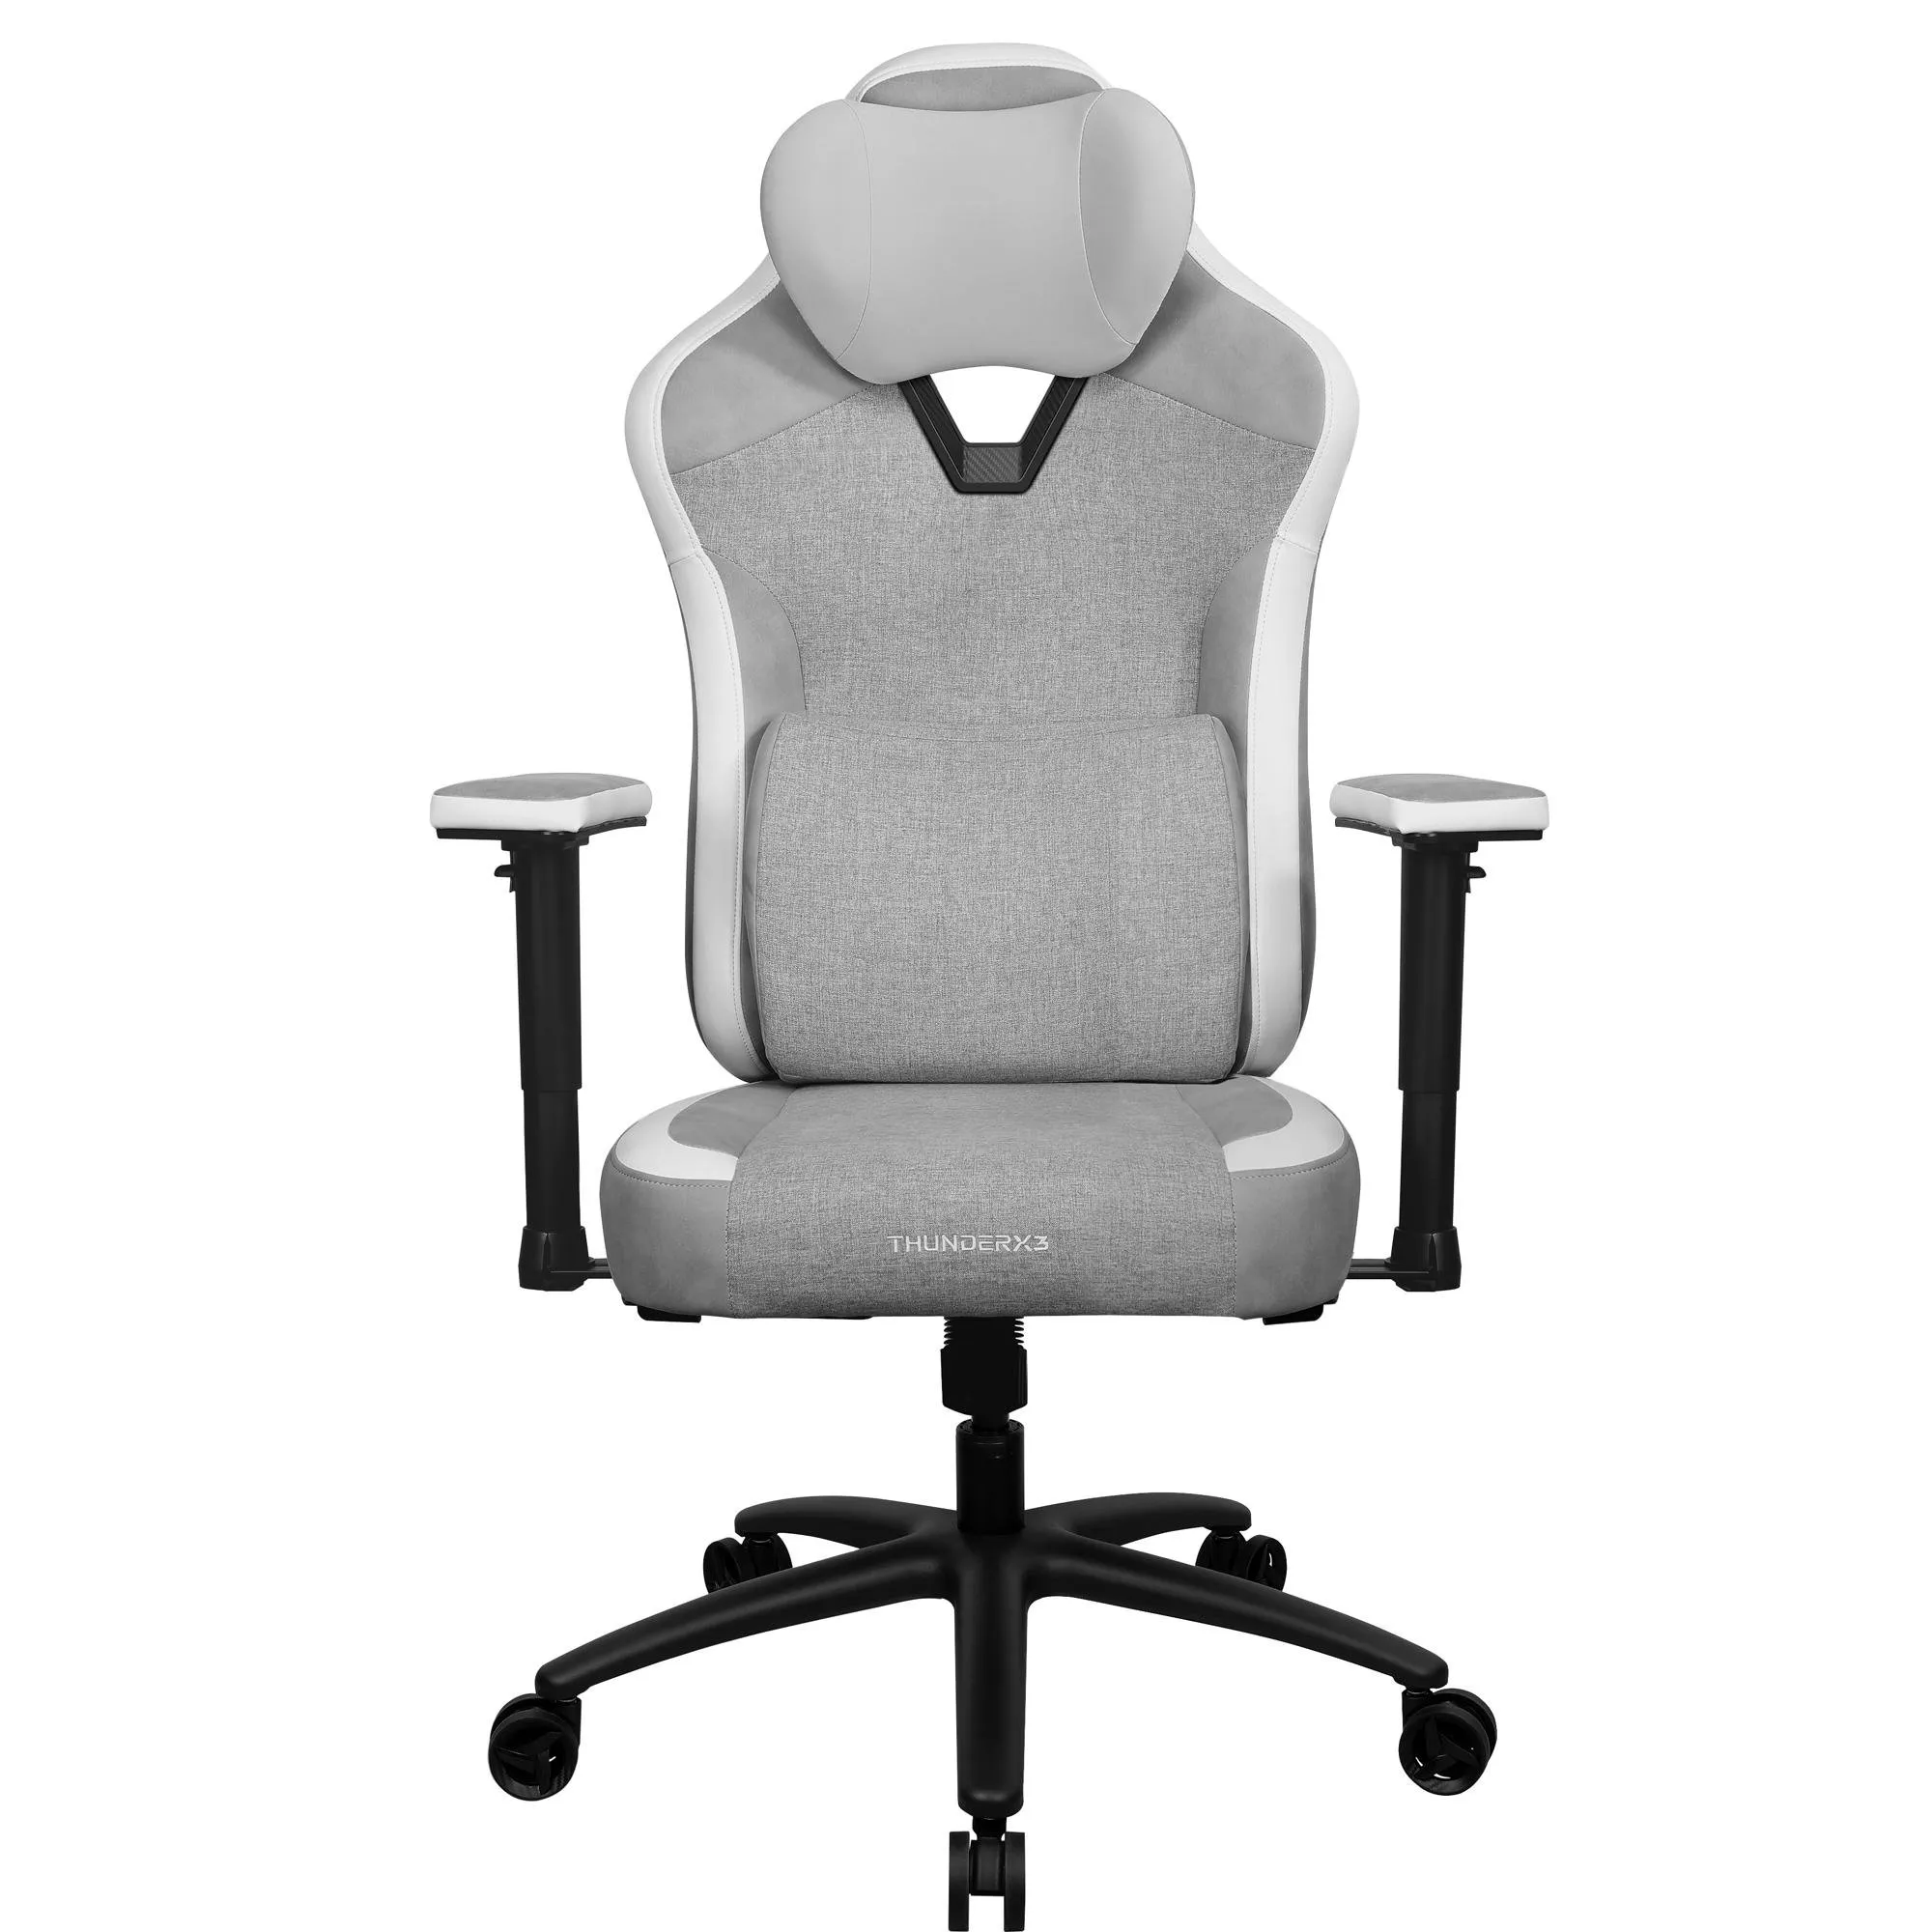 Cadeira ThunderX3 EAZE Loft Grey Cinza por 1.720,00 à vista no boleto/pix ou parcele em até 12x sem juros. Compre na loja Mundomax!